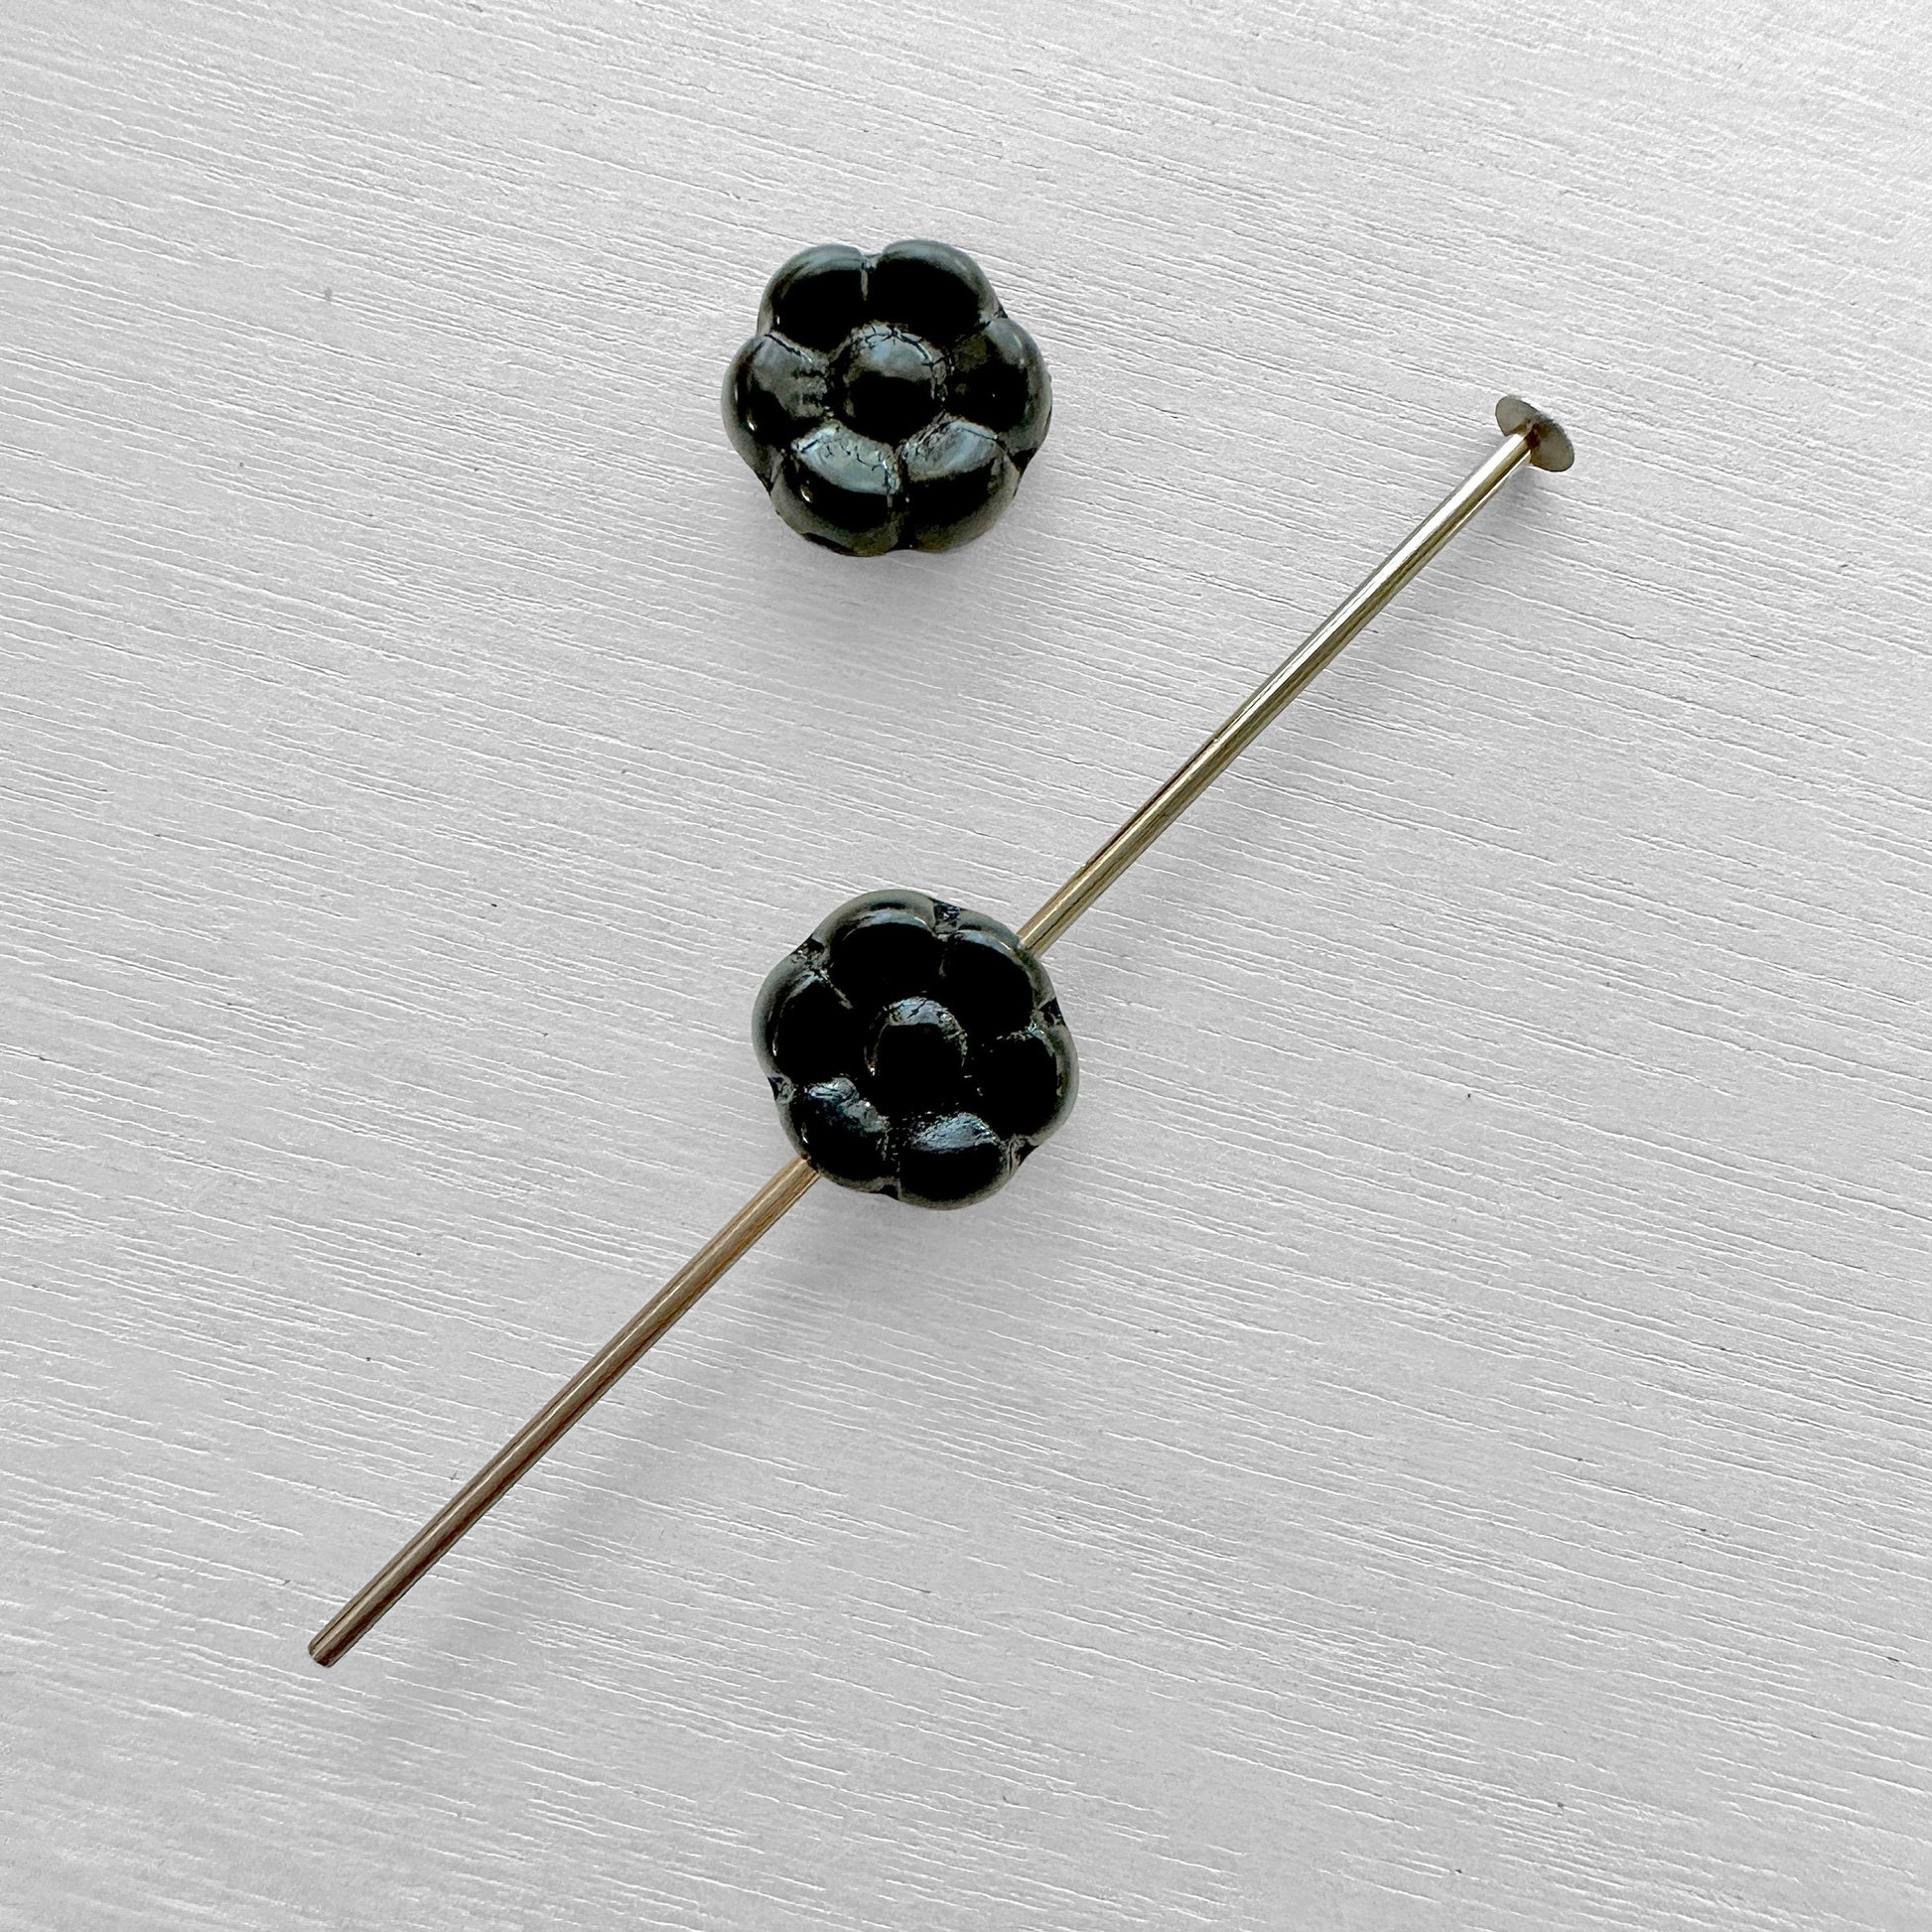 Mini Czech Glass Daisy Flower Beads - The Bead Mix